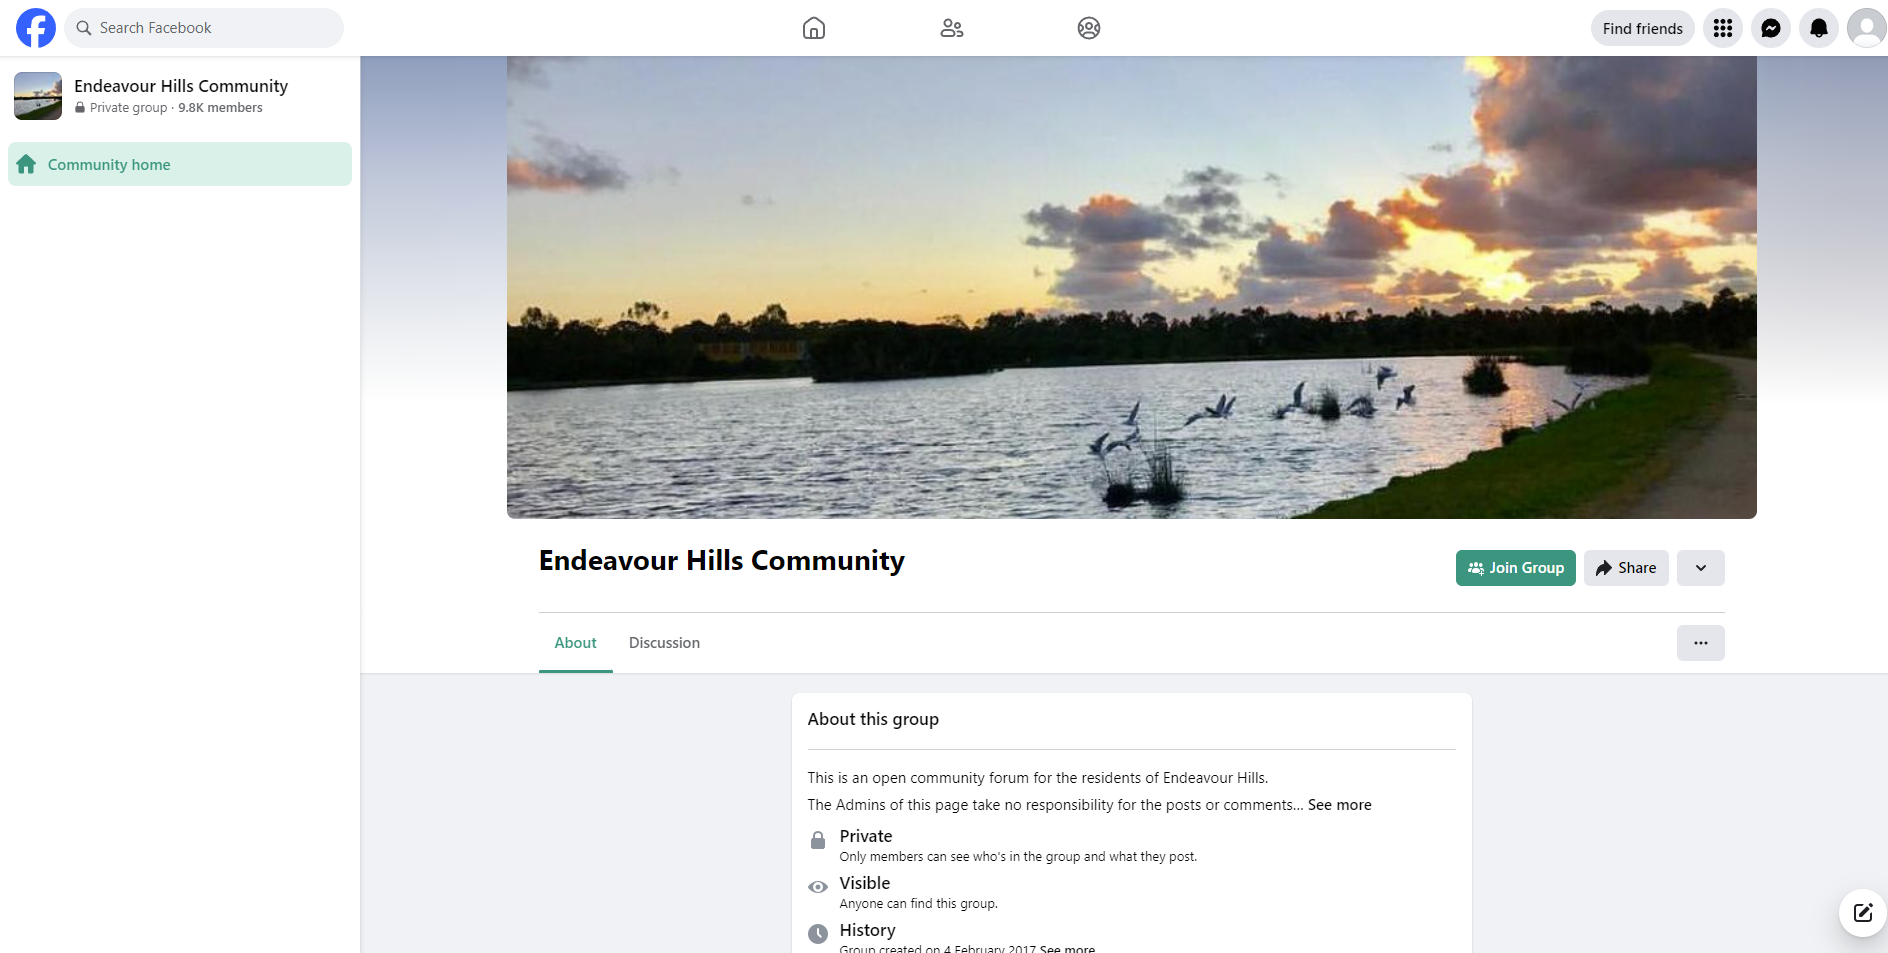 Endeavour Hills Community